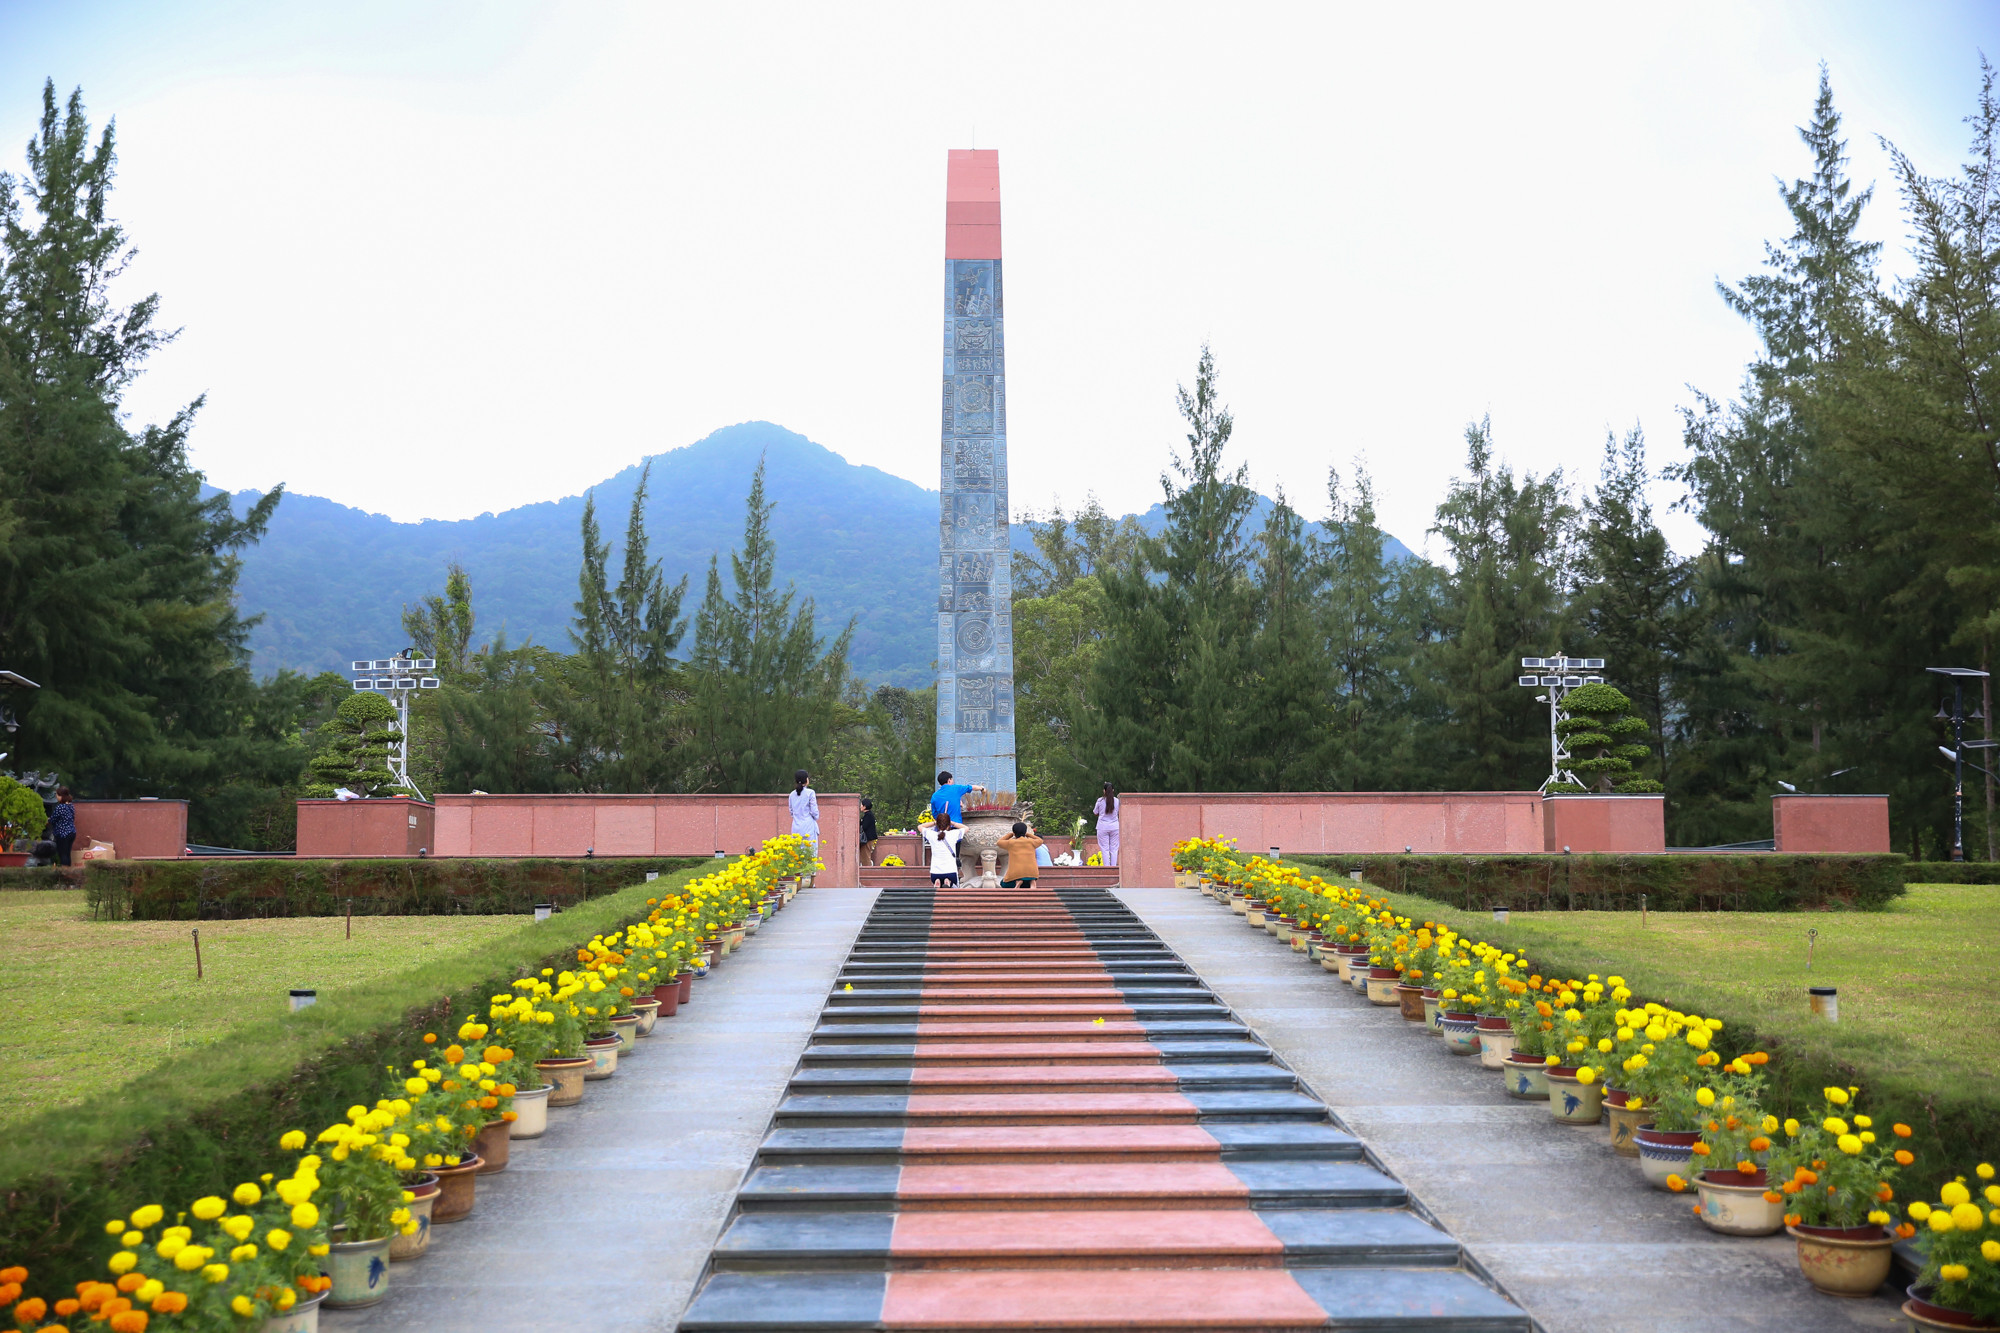 Nghĩa trang Hàng Dương là nghĩa trang lớn nhất tại Côn Đảo. Đây là nơi chôn cất hàng vạn chiến sĩ cách mạng và người yêu nước Việt Nam qua nhiều thế hệ bị tù đày, kéo dài từ năm 1862 đến năm 1975, trong nhà tù Côn Đảo của chính quyền thuộc địa Pháp, và sau này là chính quyền Việt Nam Cộng hòa.